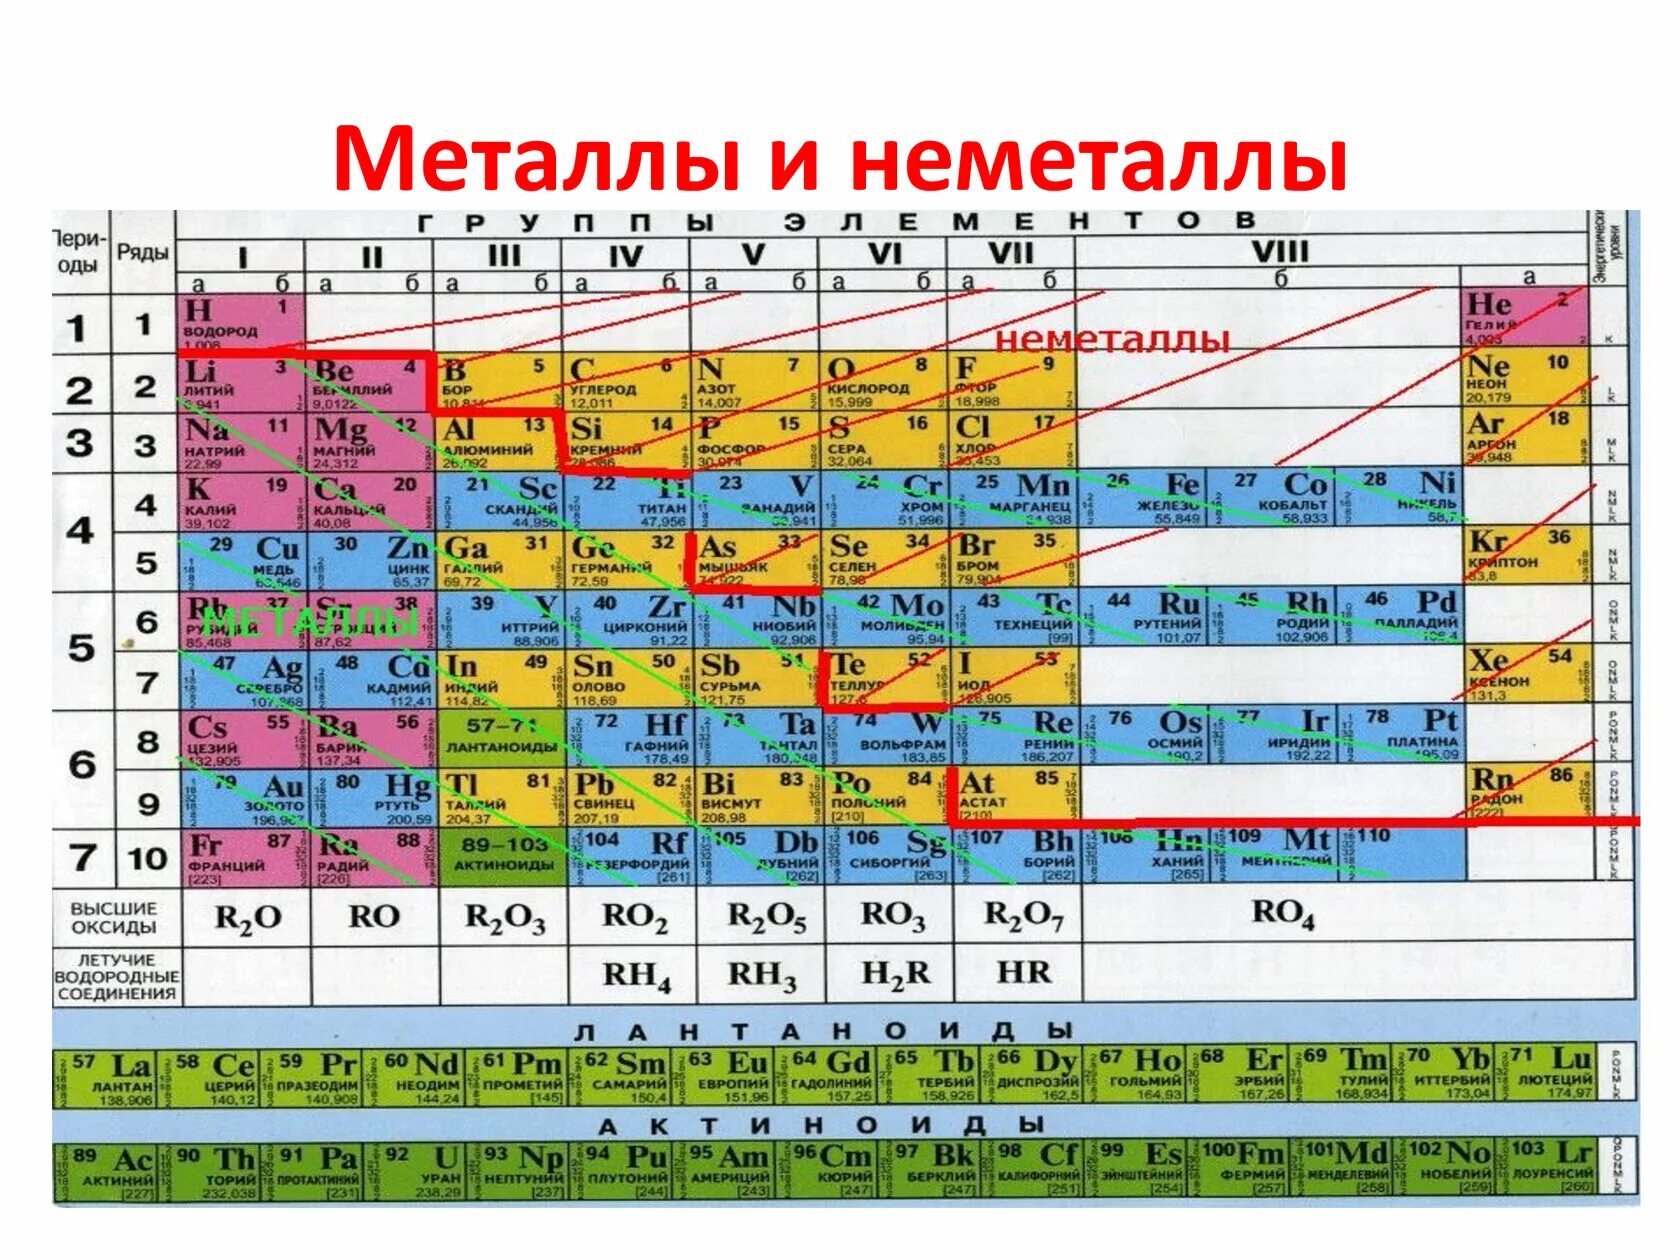 Названия групп неметаллов. Таблица Менделеева металлы и неметаллы. Химия металлы и неметаллы таблица. Химические элементы металлы и неметаллы. Таблица элементов Менделеева металлы и неметаллы.